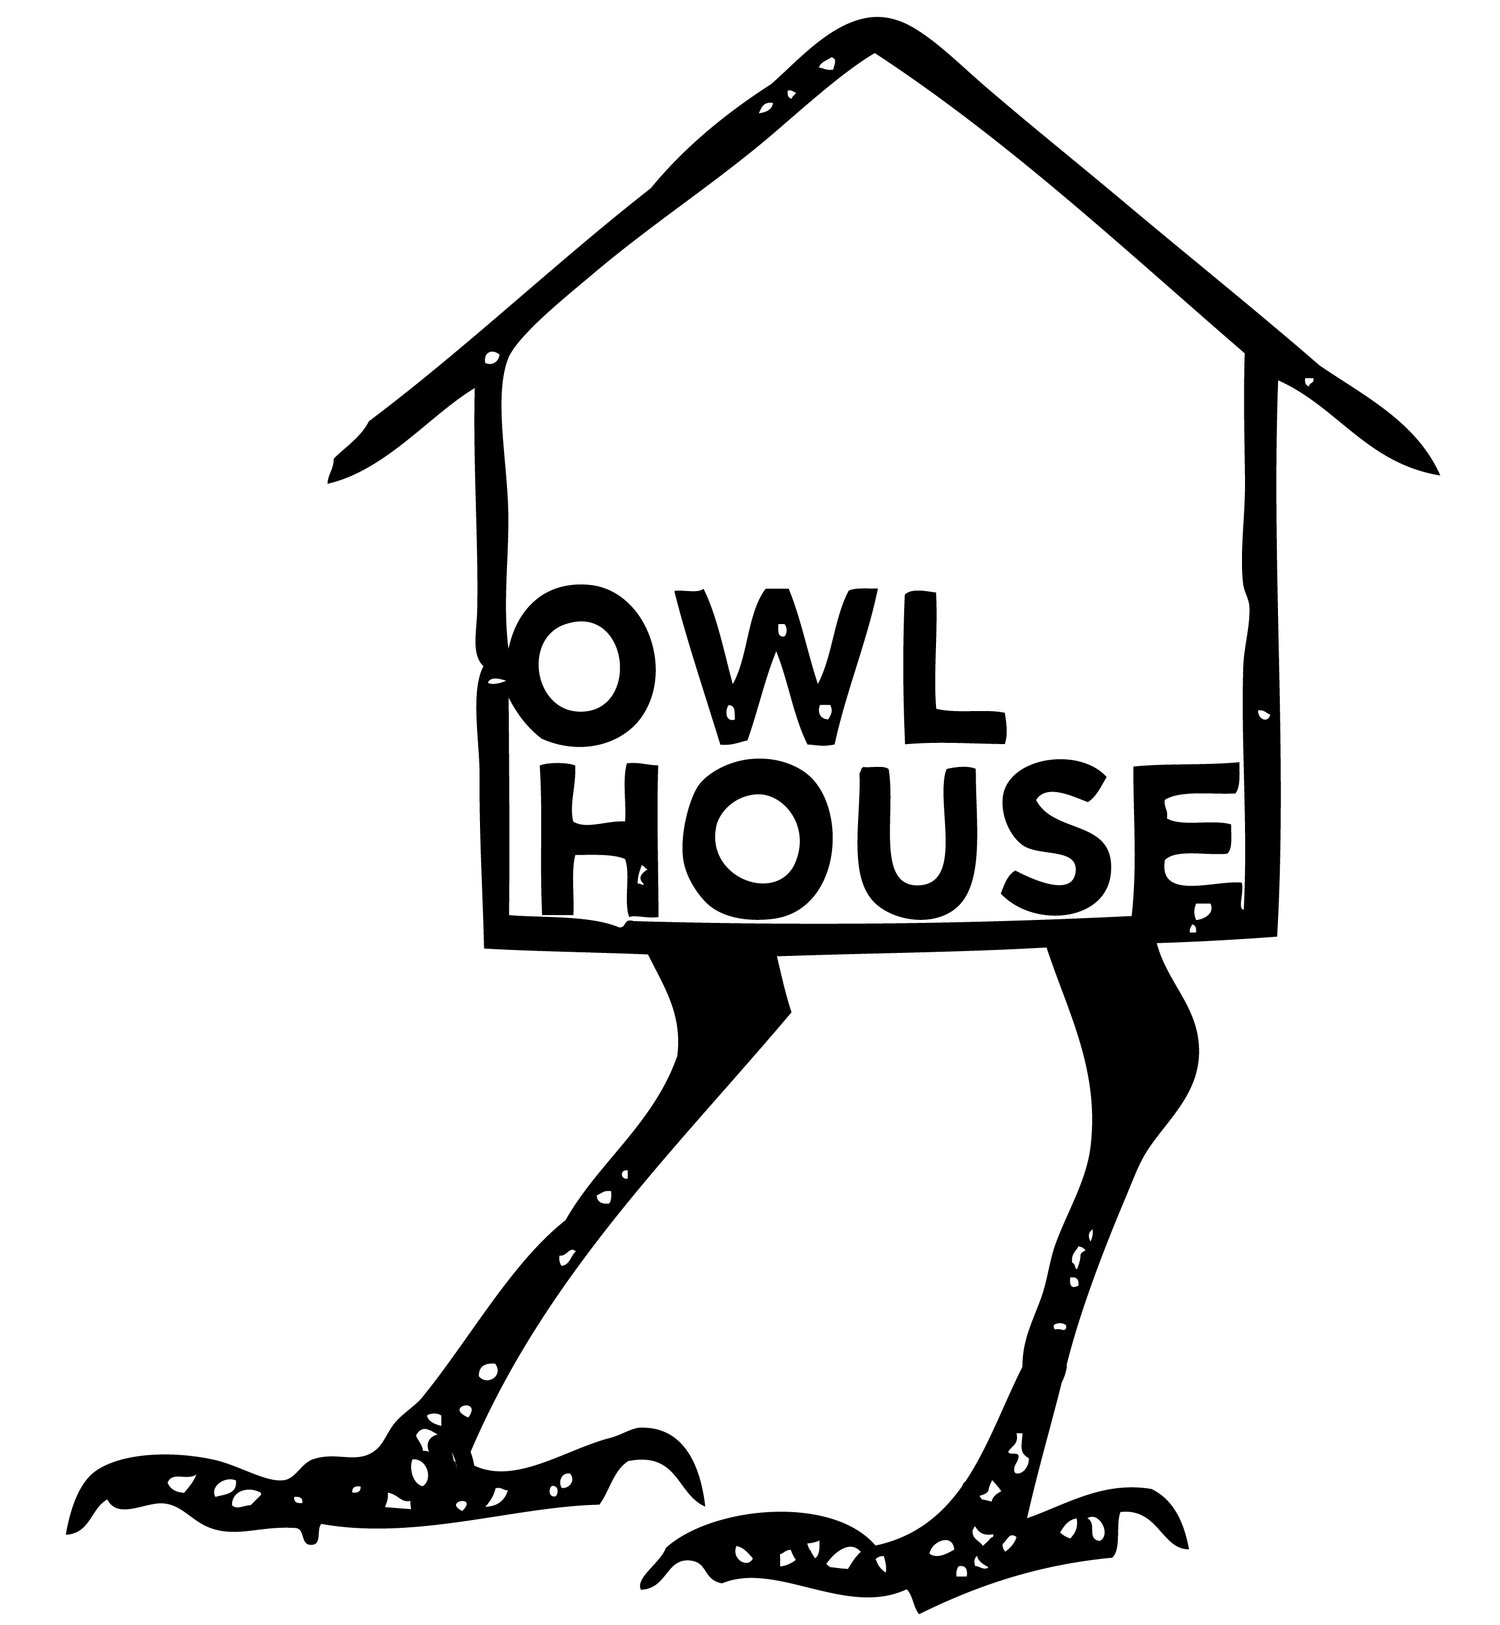 OWL HOUSE